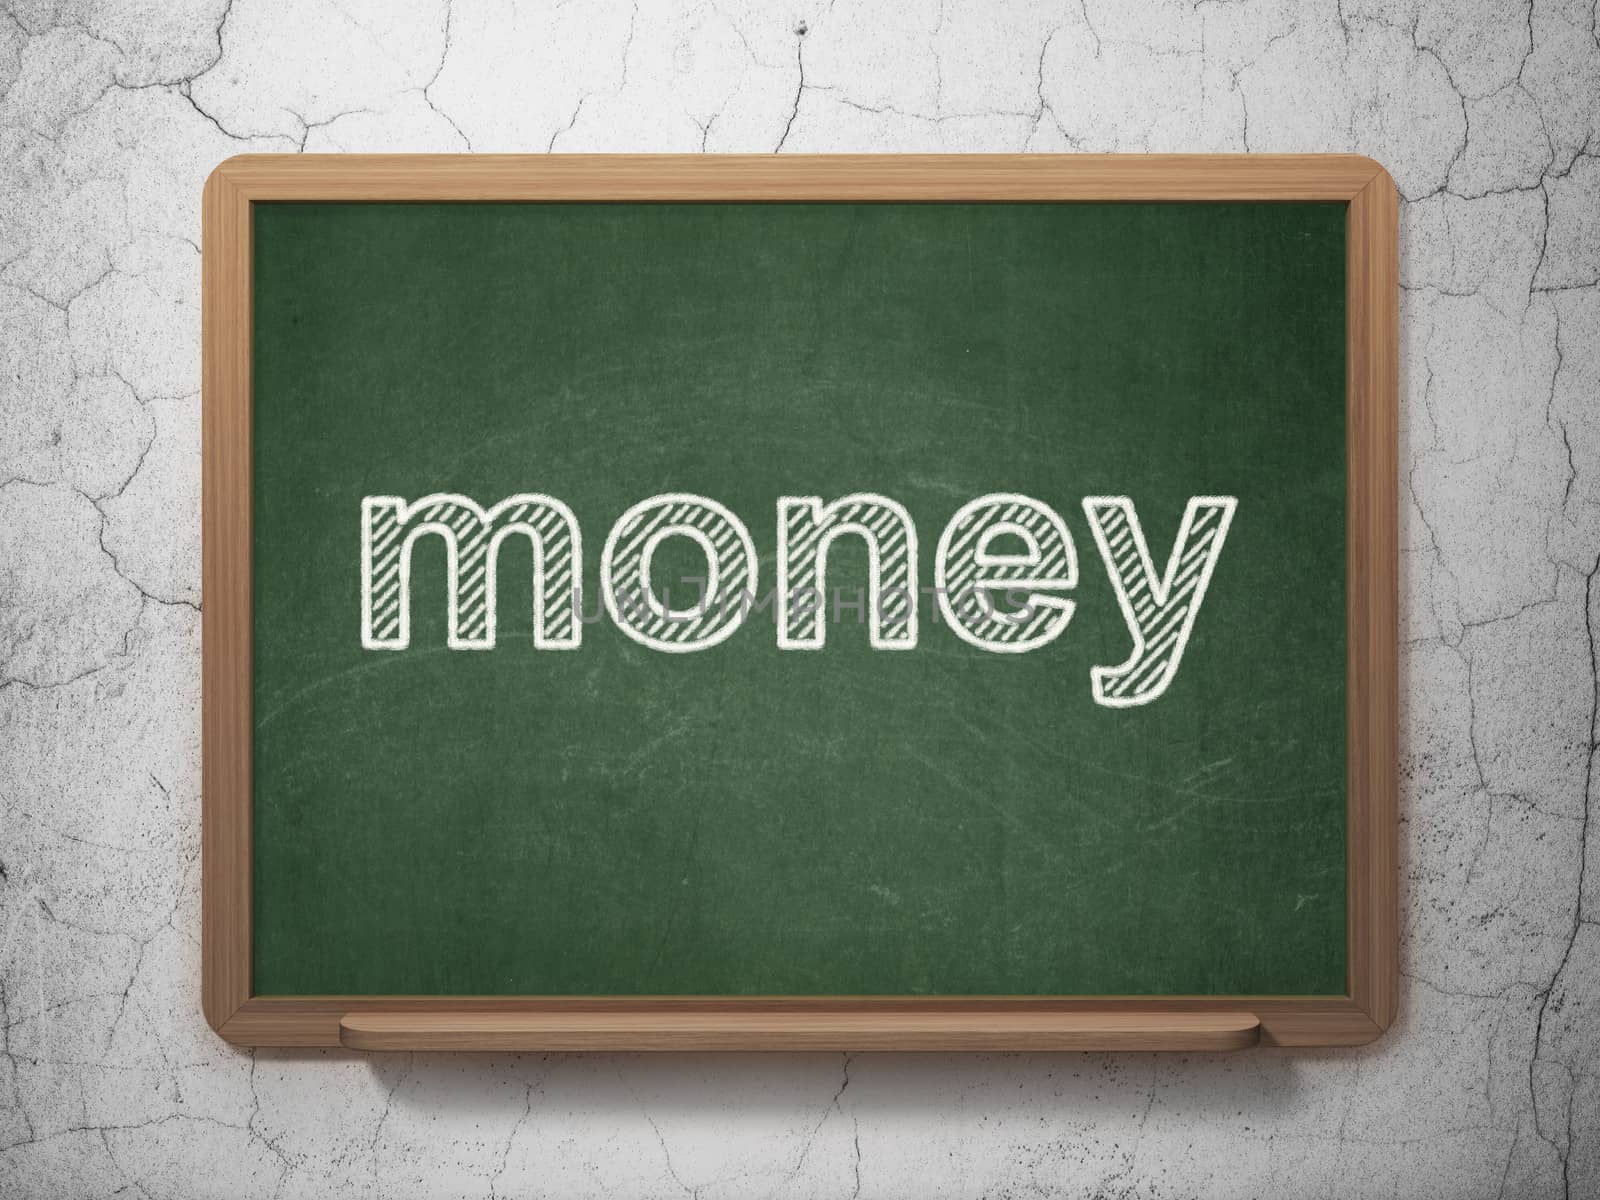 Finance concept: Money on chalkboard background by maxkabakov